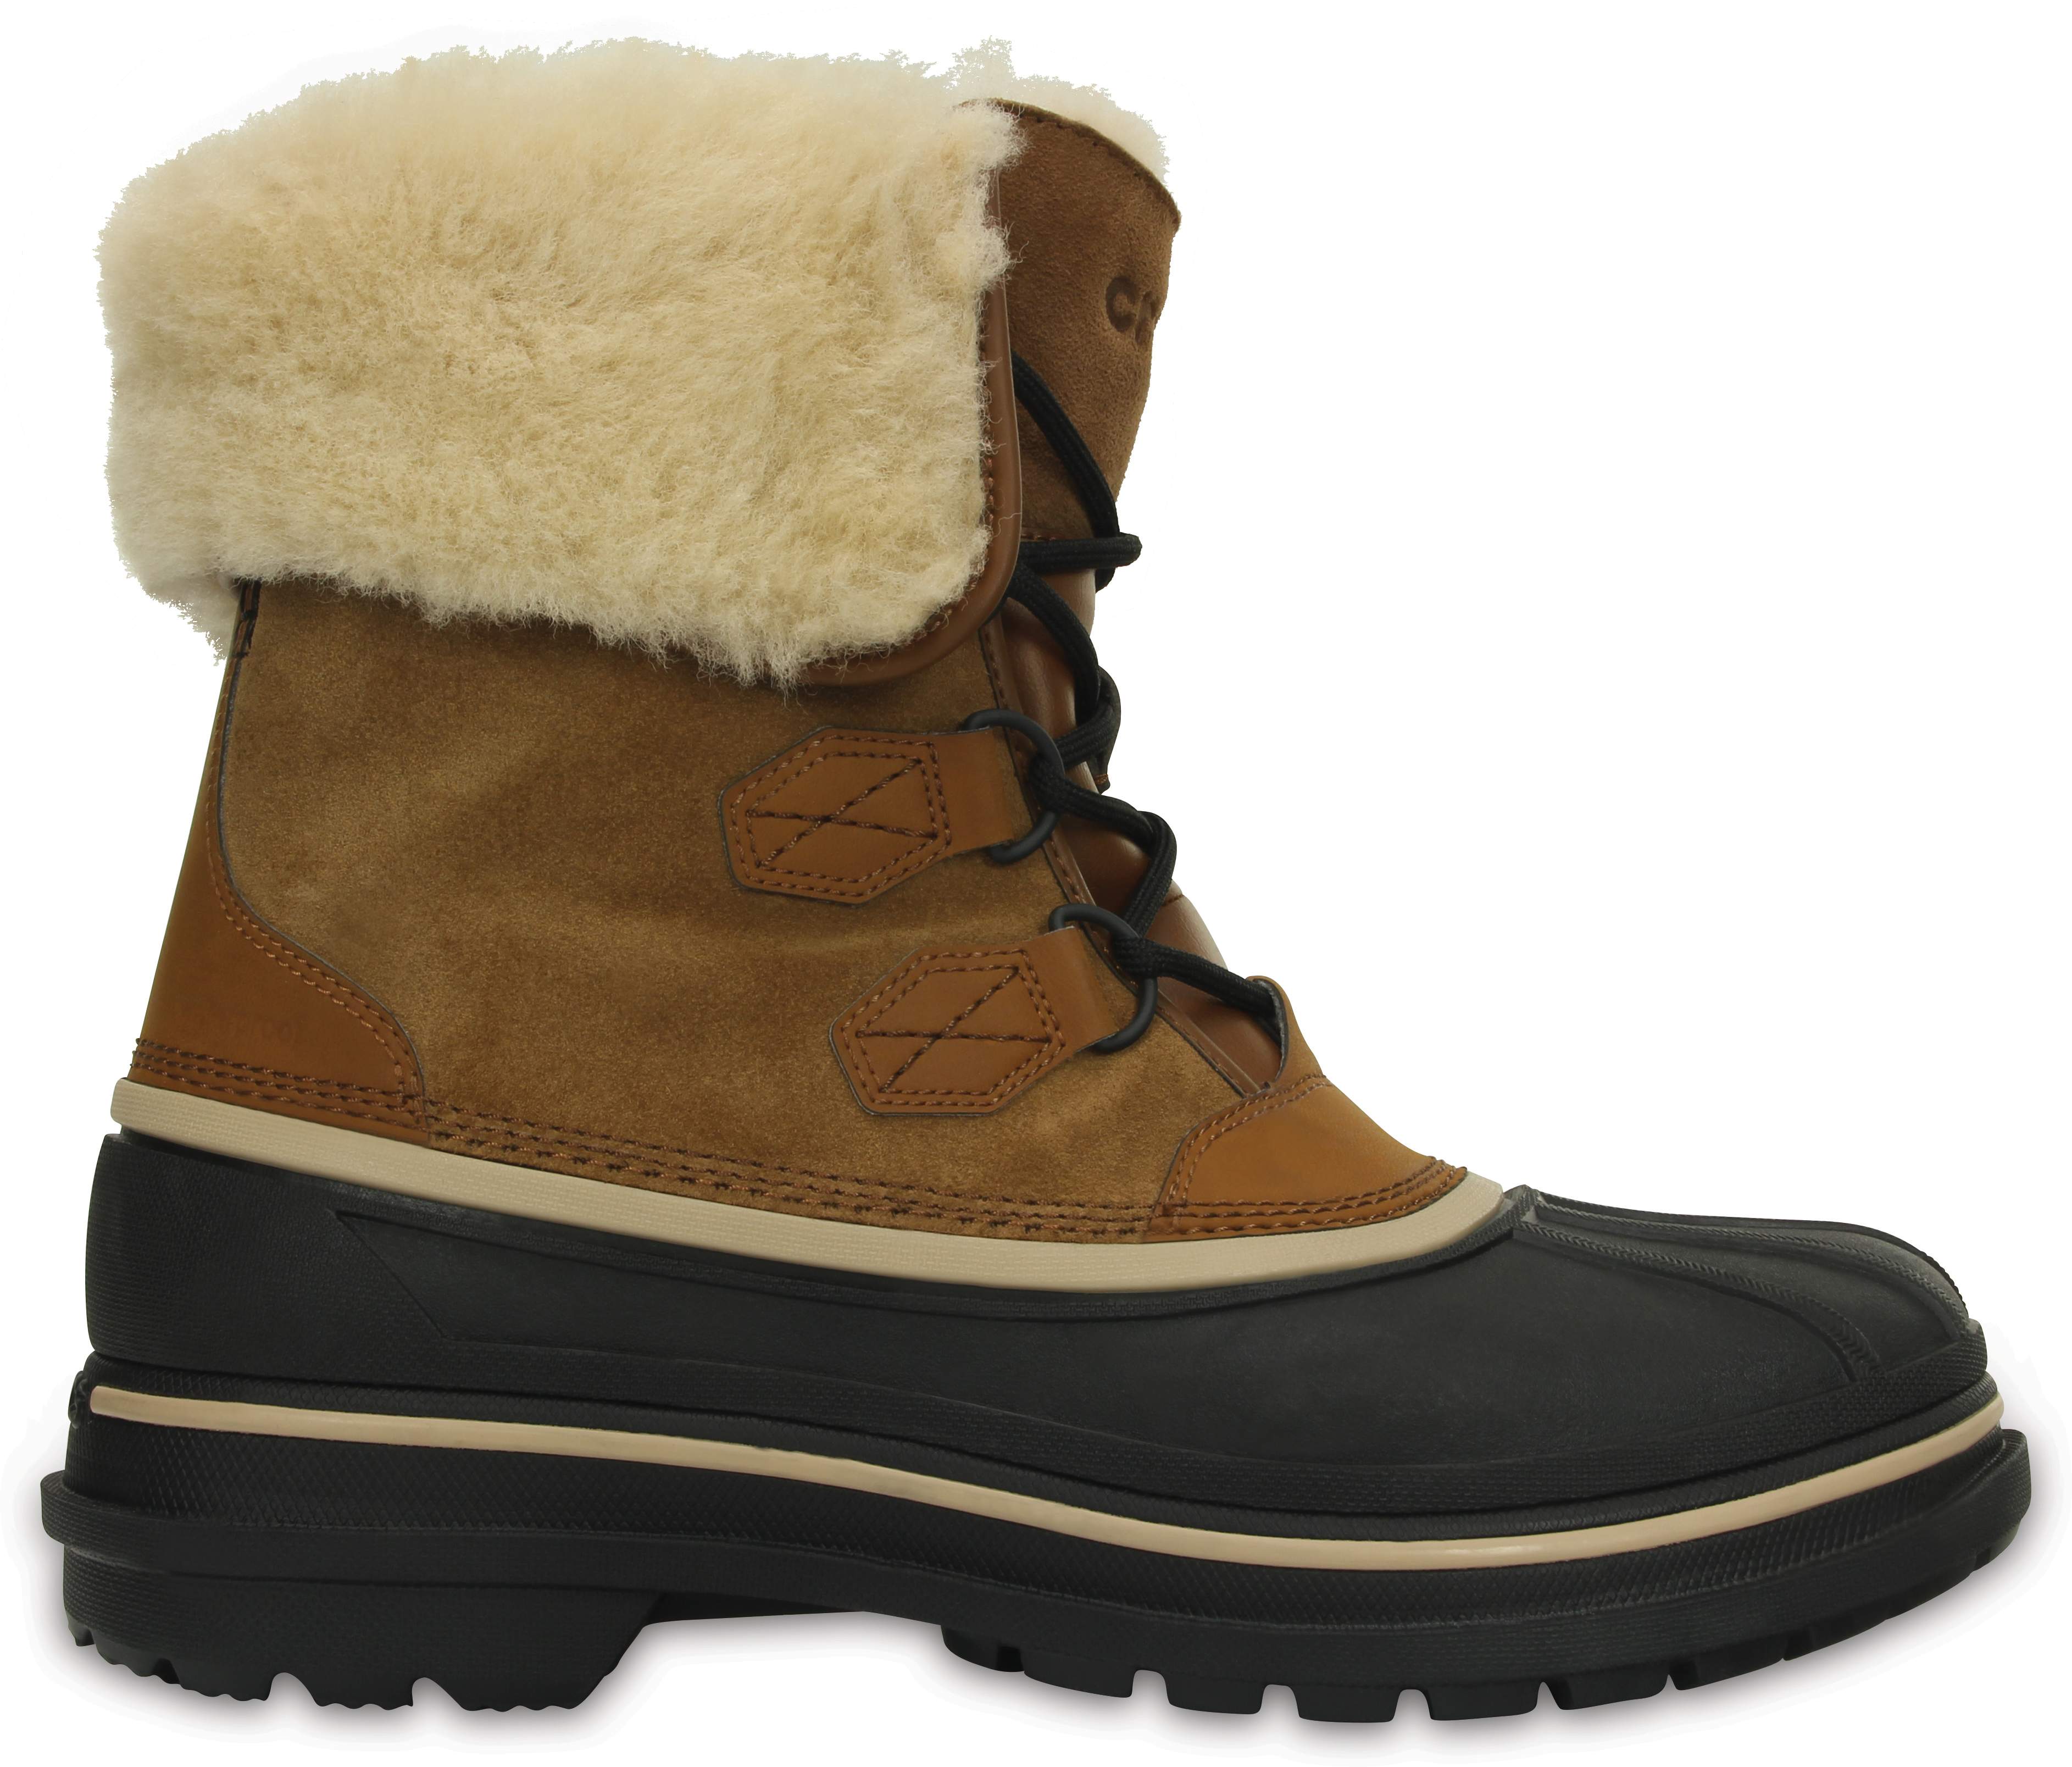 crocs men's boots